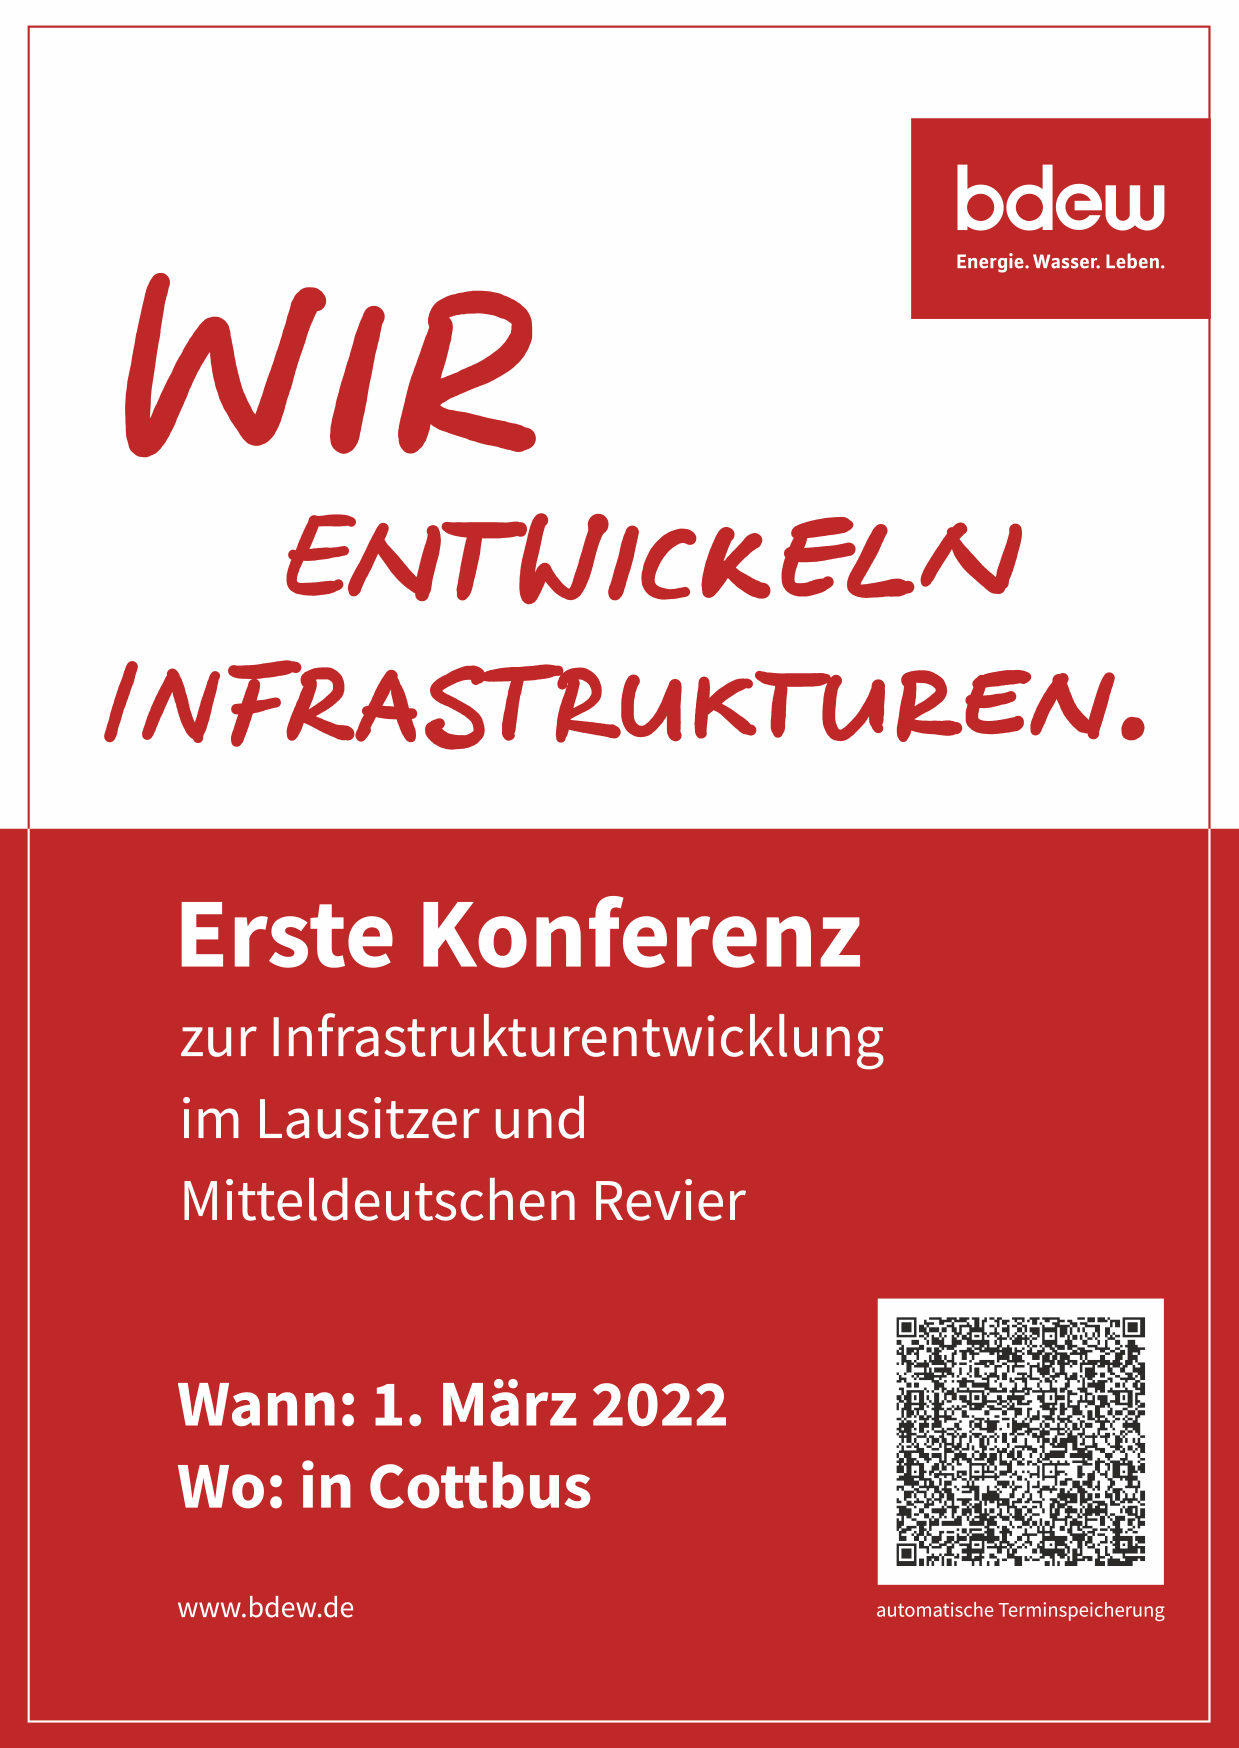 Konferenzinformation. Findet am 1. März 2022 in Cottbus statt